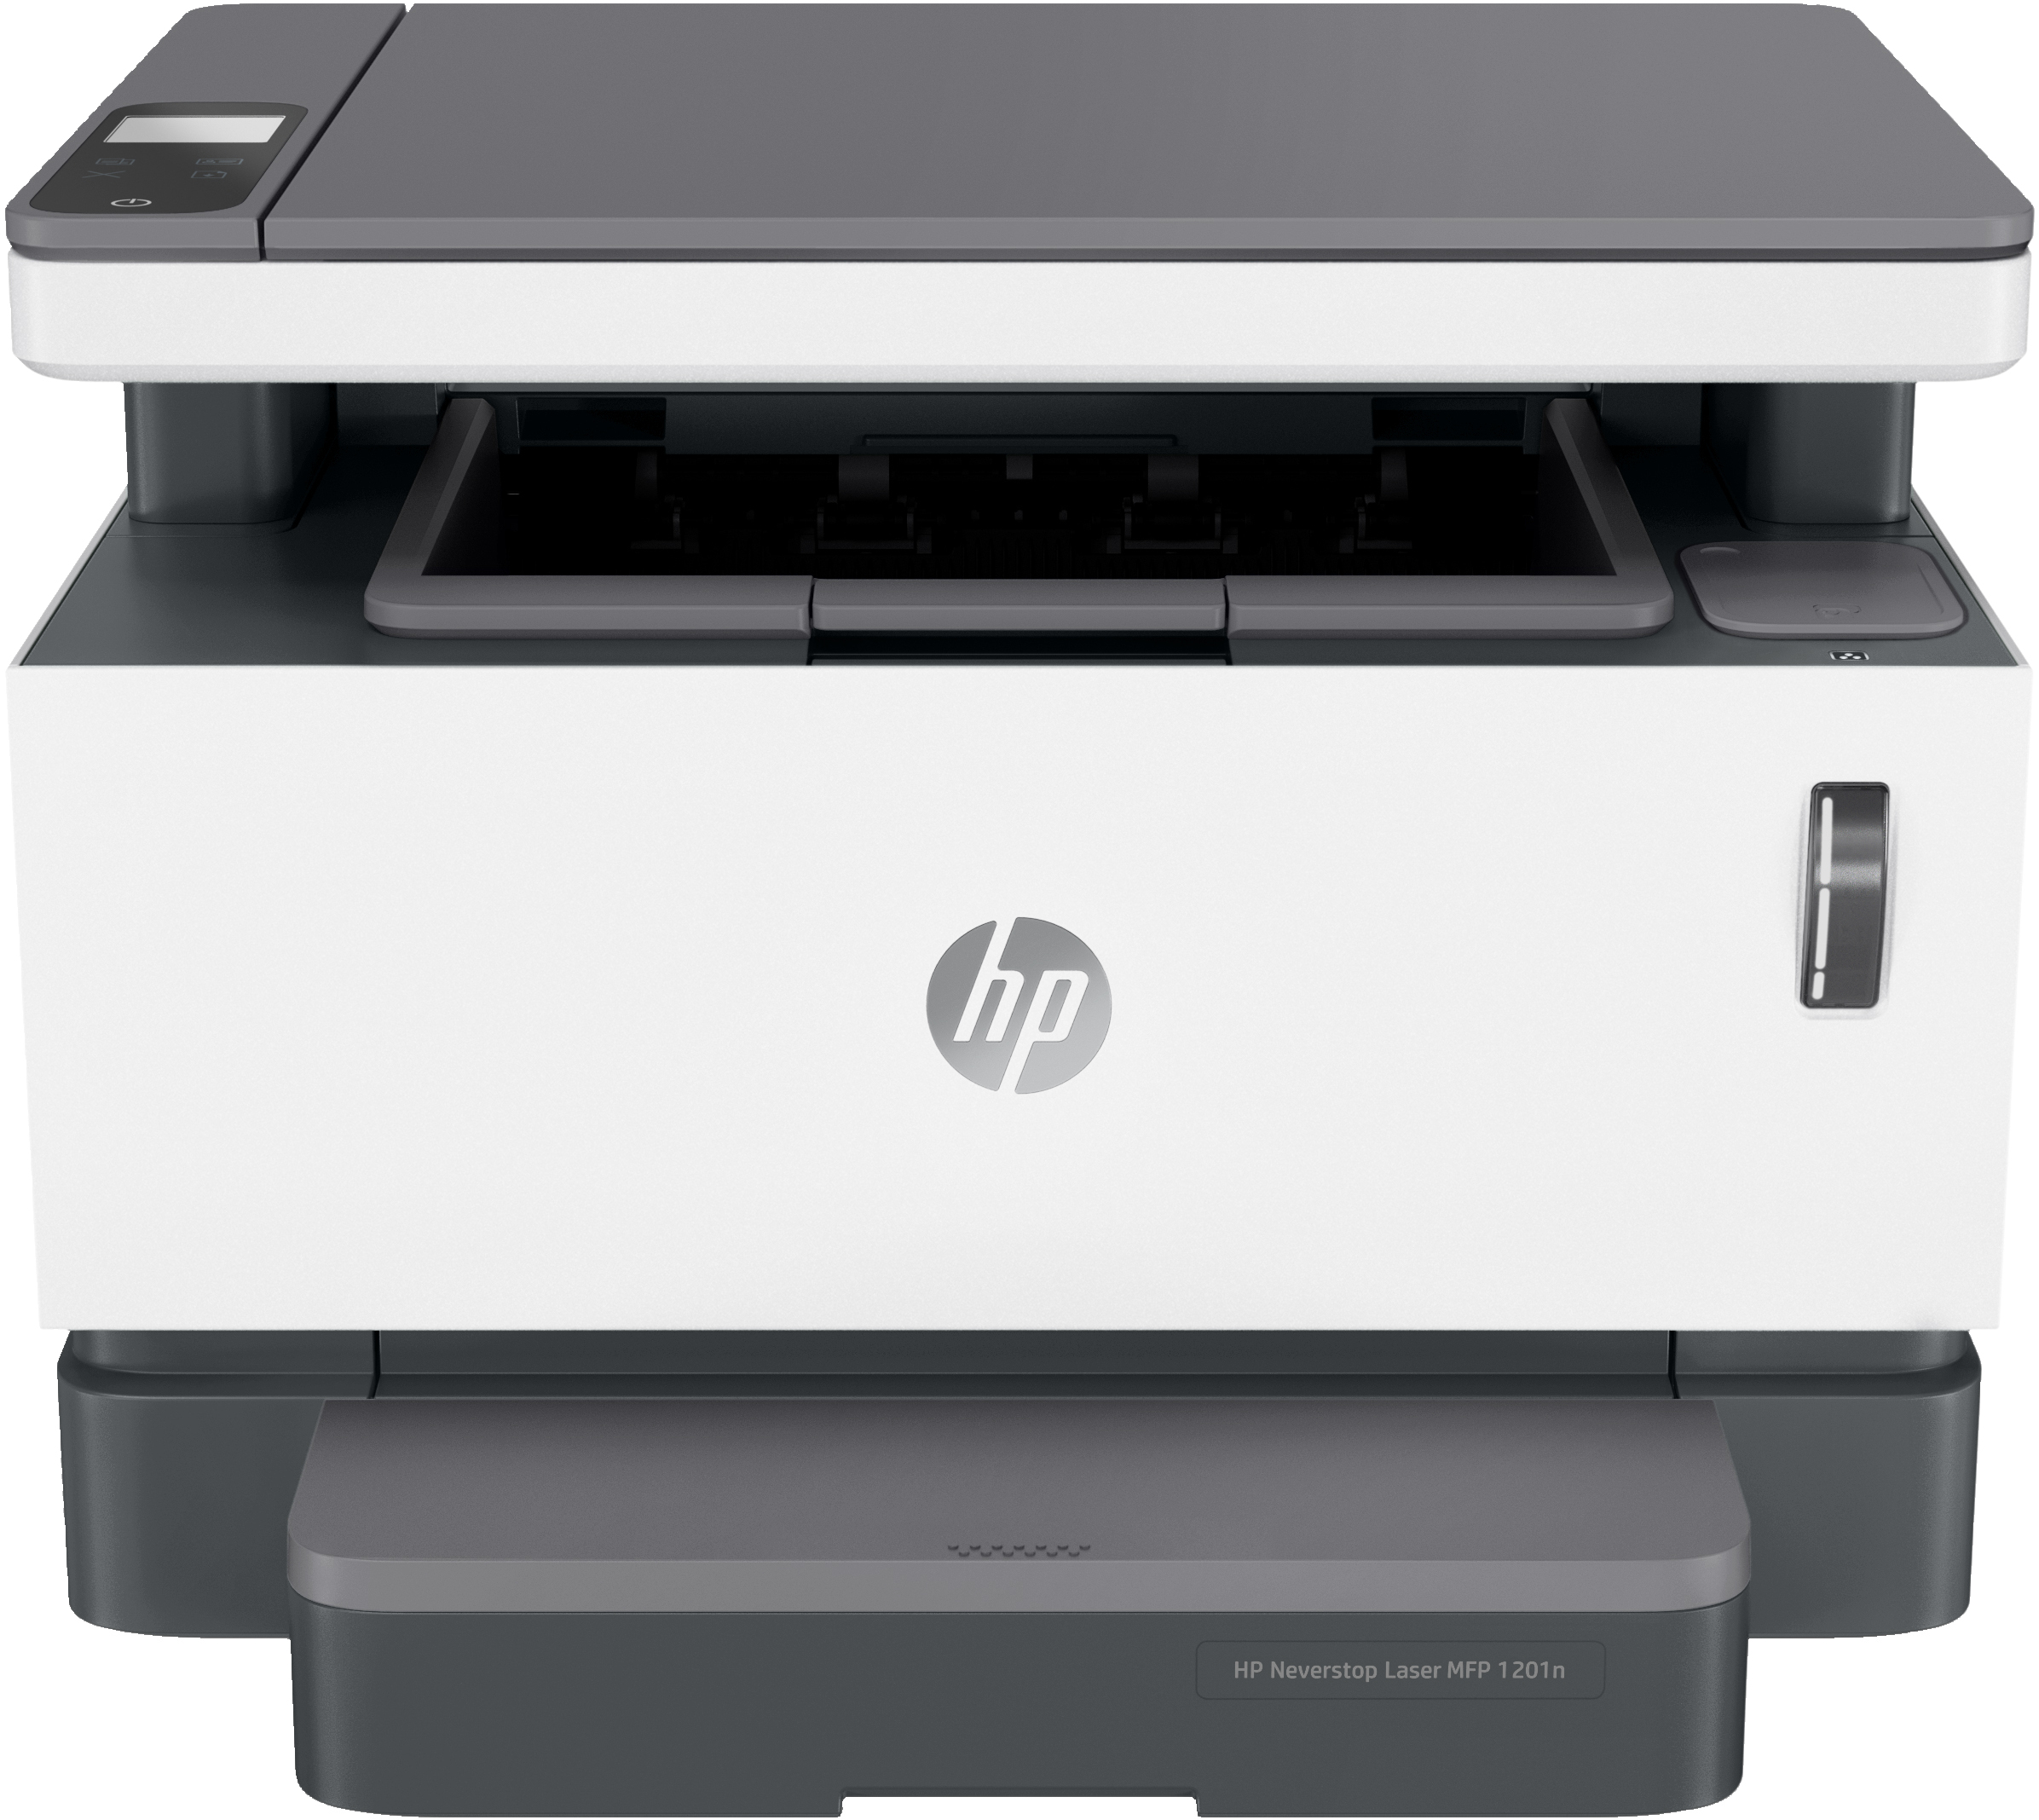 HP HP Neverstop Laser MFP 1201n, Zwart-wit, Printer voor Bedrijf, Printen, kopi&#235;ren, scannen, Scans naar pdf